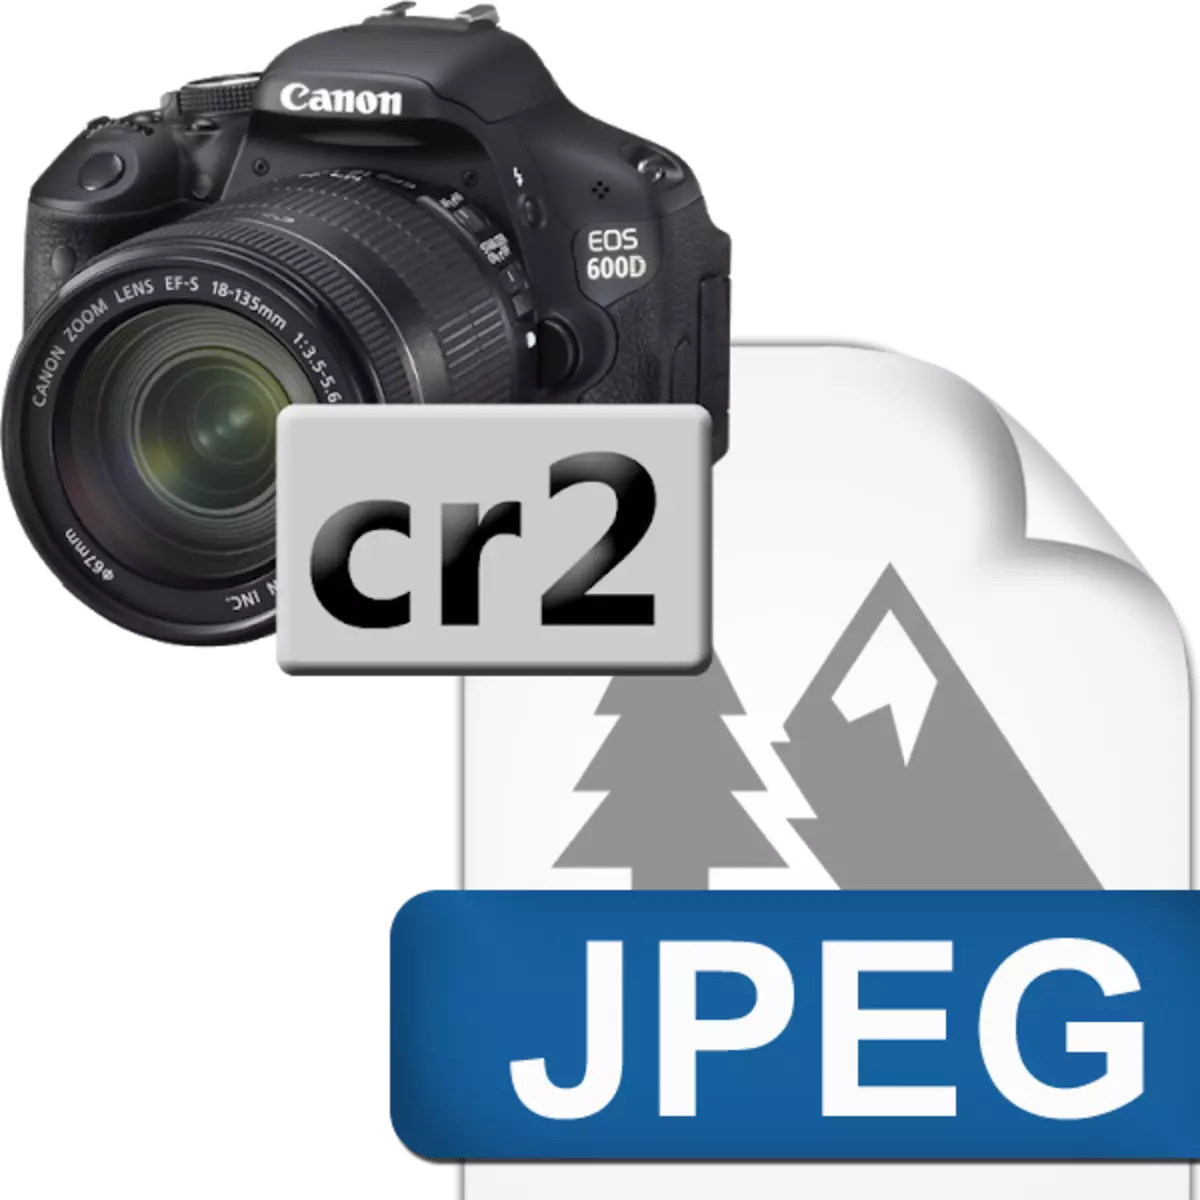 វិធីបំលែង CR2 ក្នុង JPG